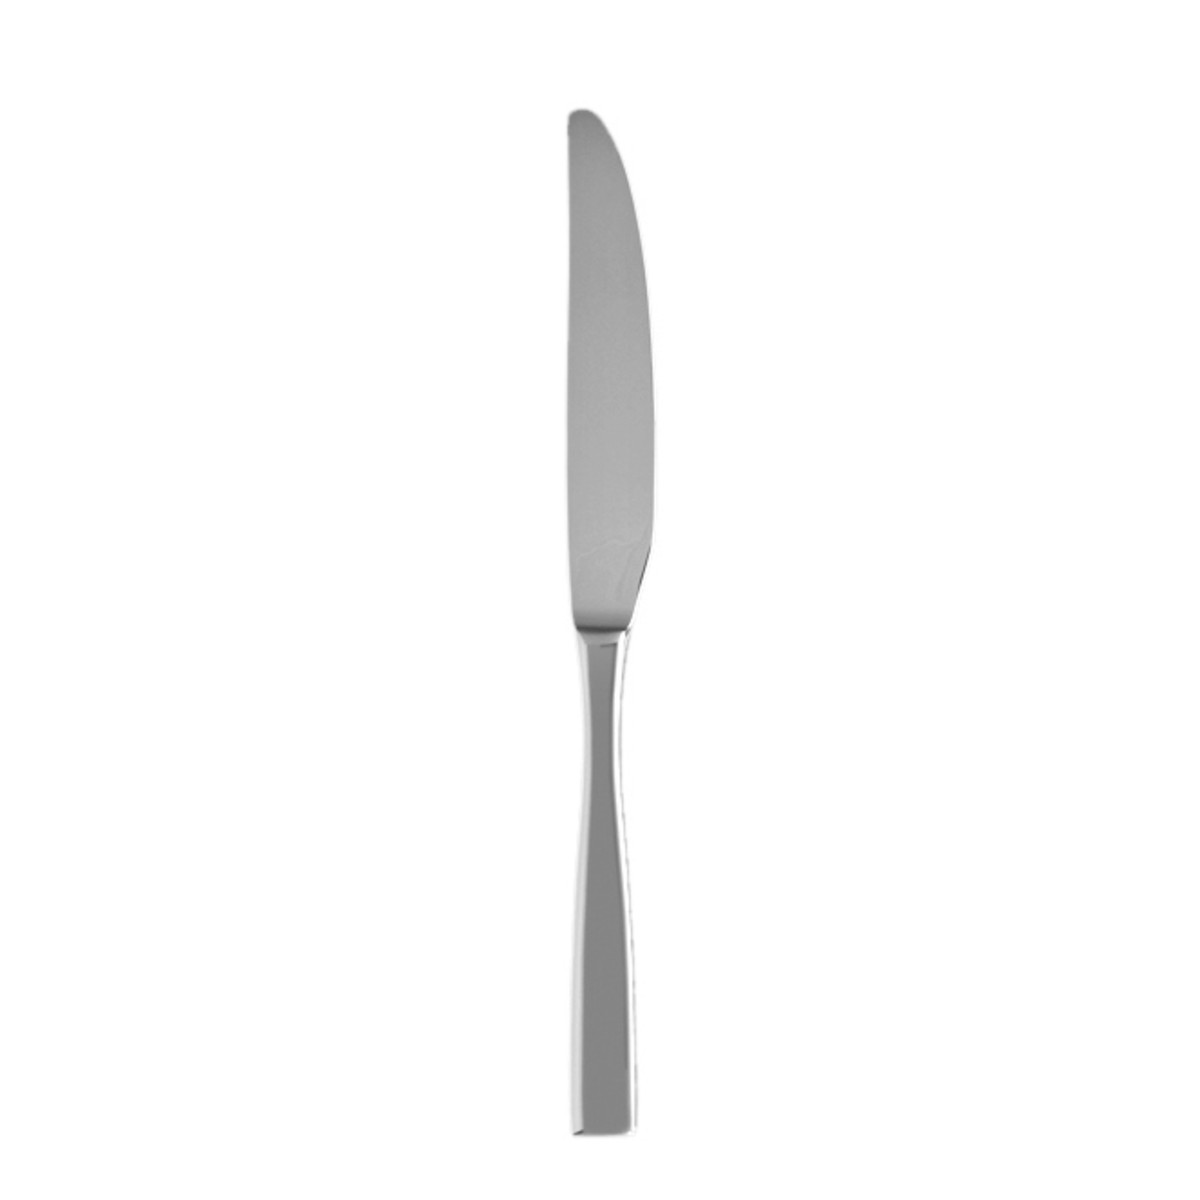 Lucca Dinner Knife 9.2"